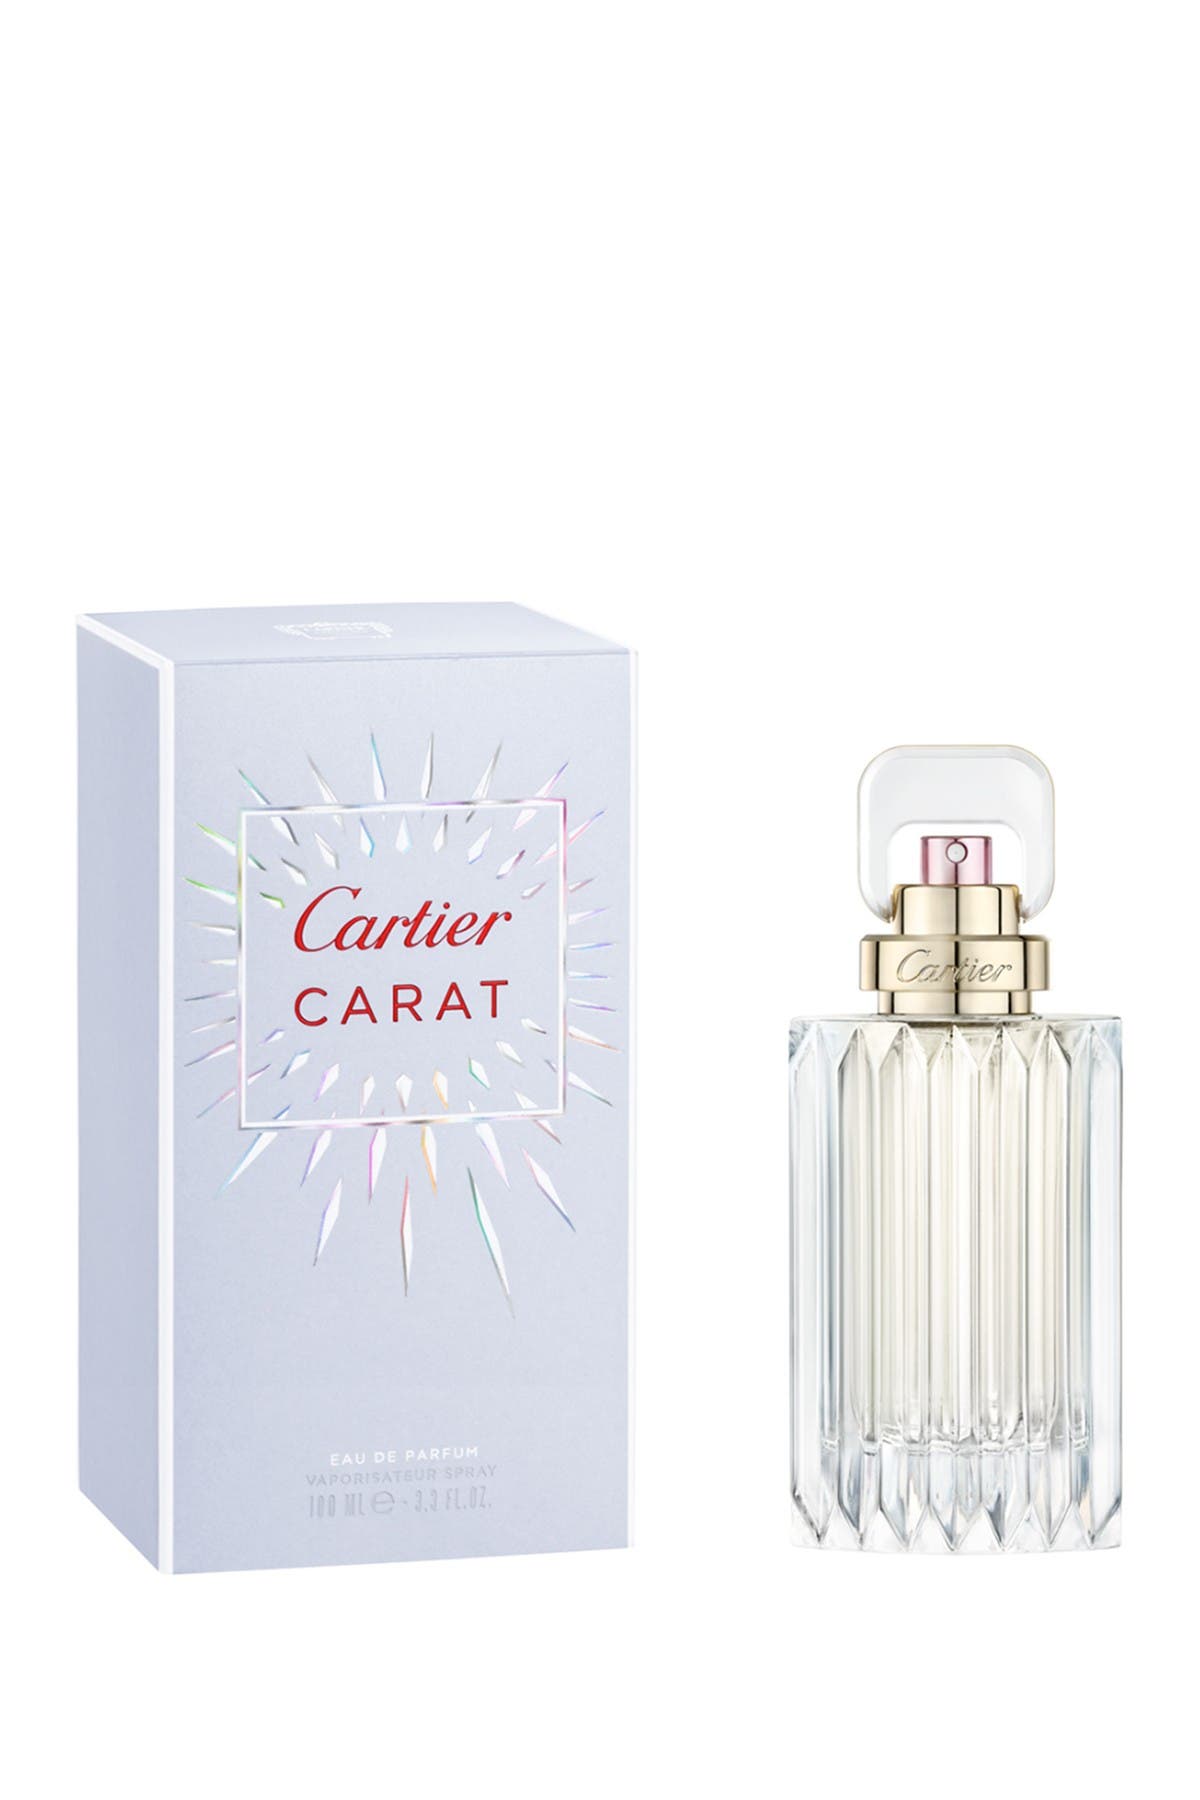 cartier carat perfume notes